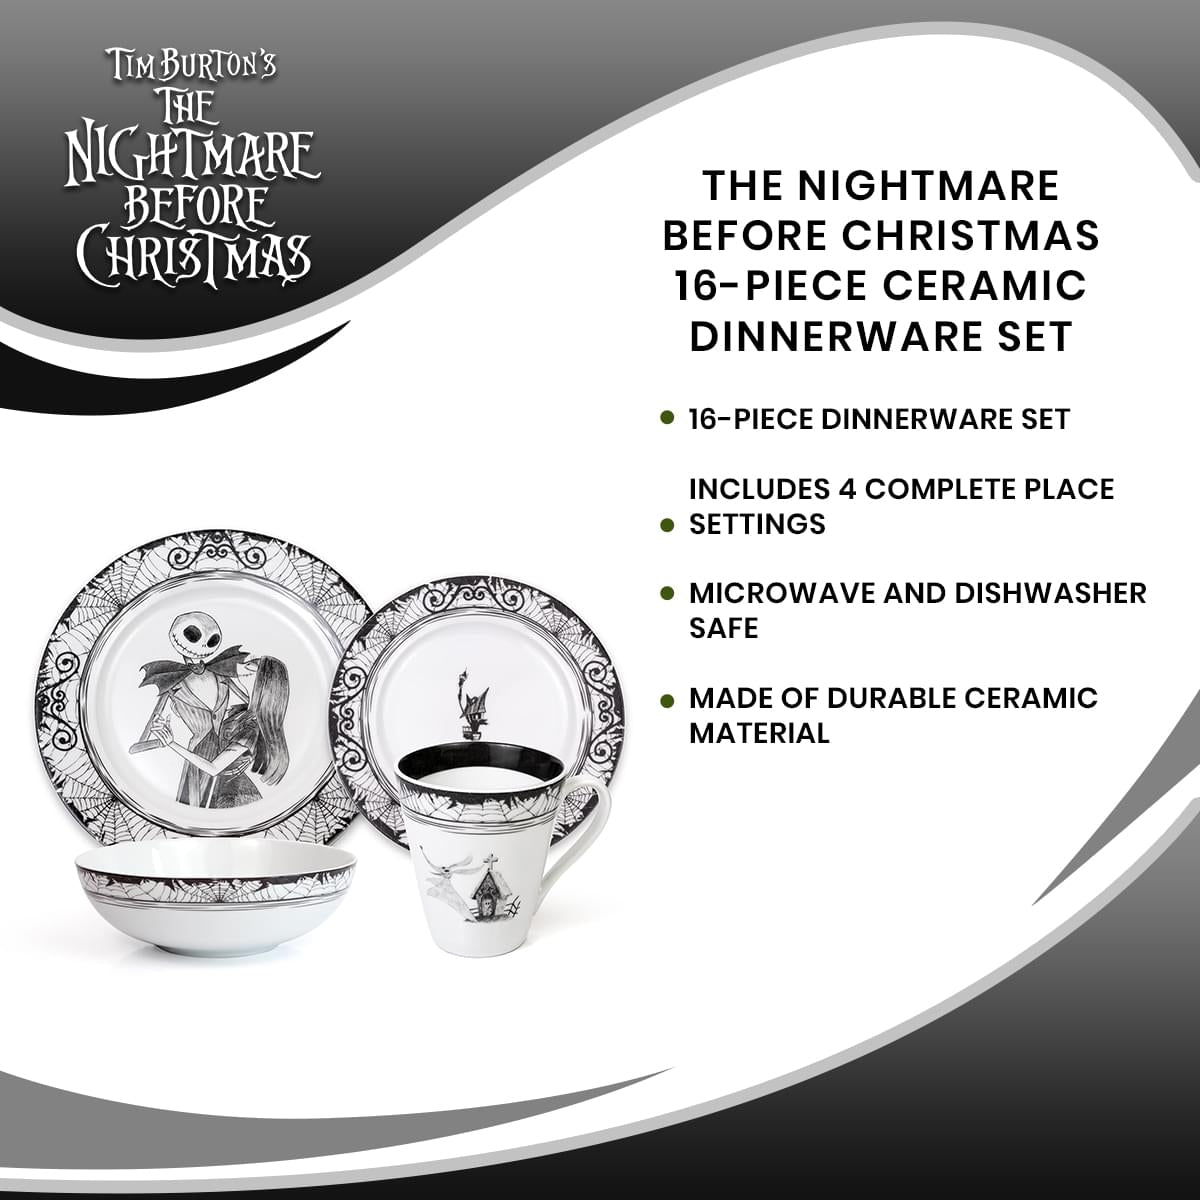 The Nightmare Before Christmas 16-Piece Ceramic Dinnerware Set